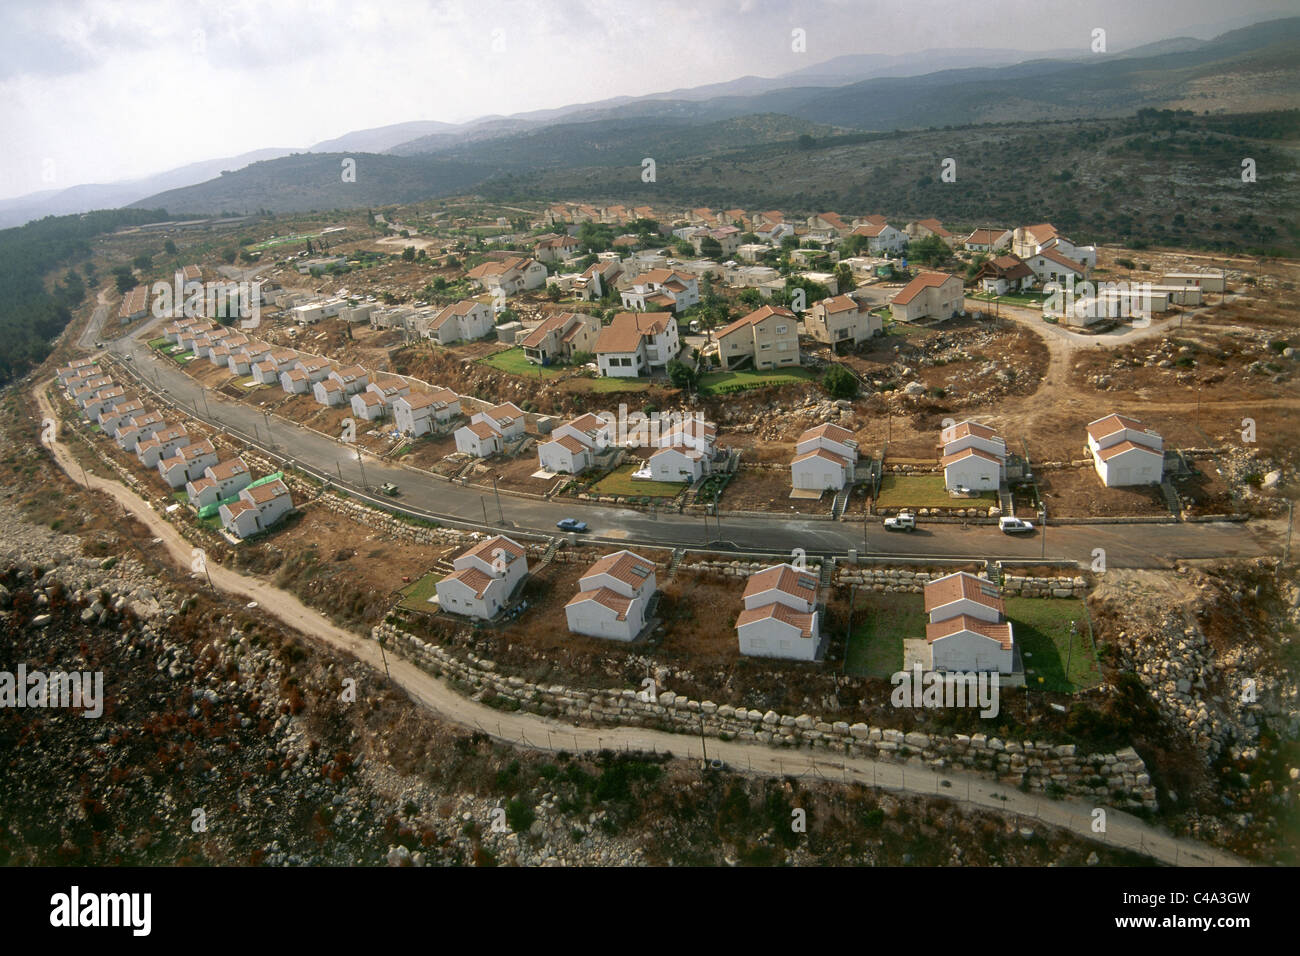 Fotografía aérea del asentamiento israelí de Mevo Dotan en Cisjordania Foto de stock